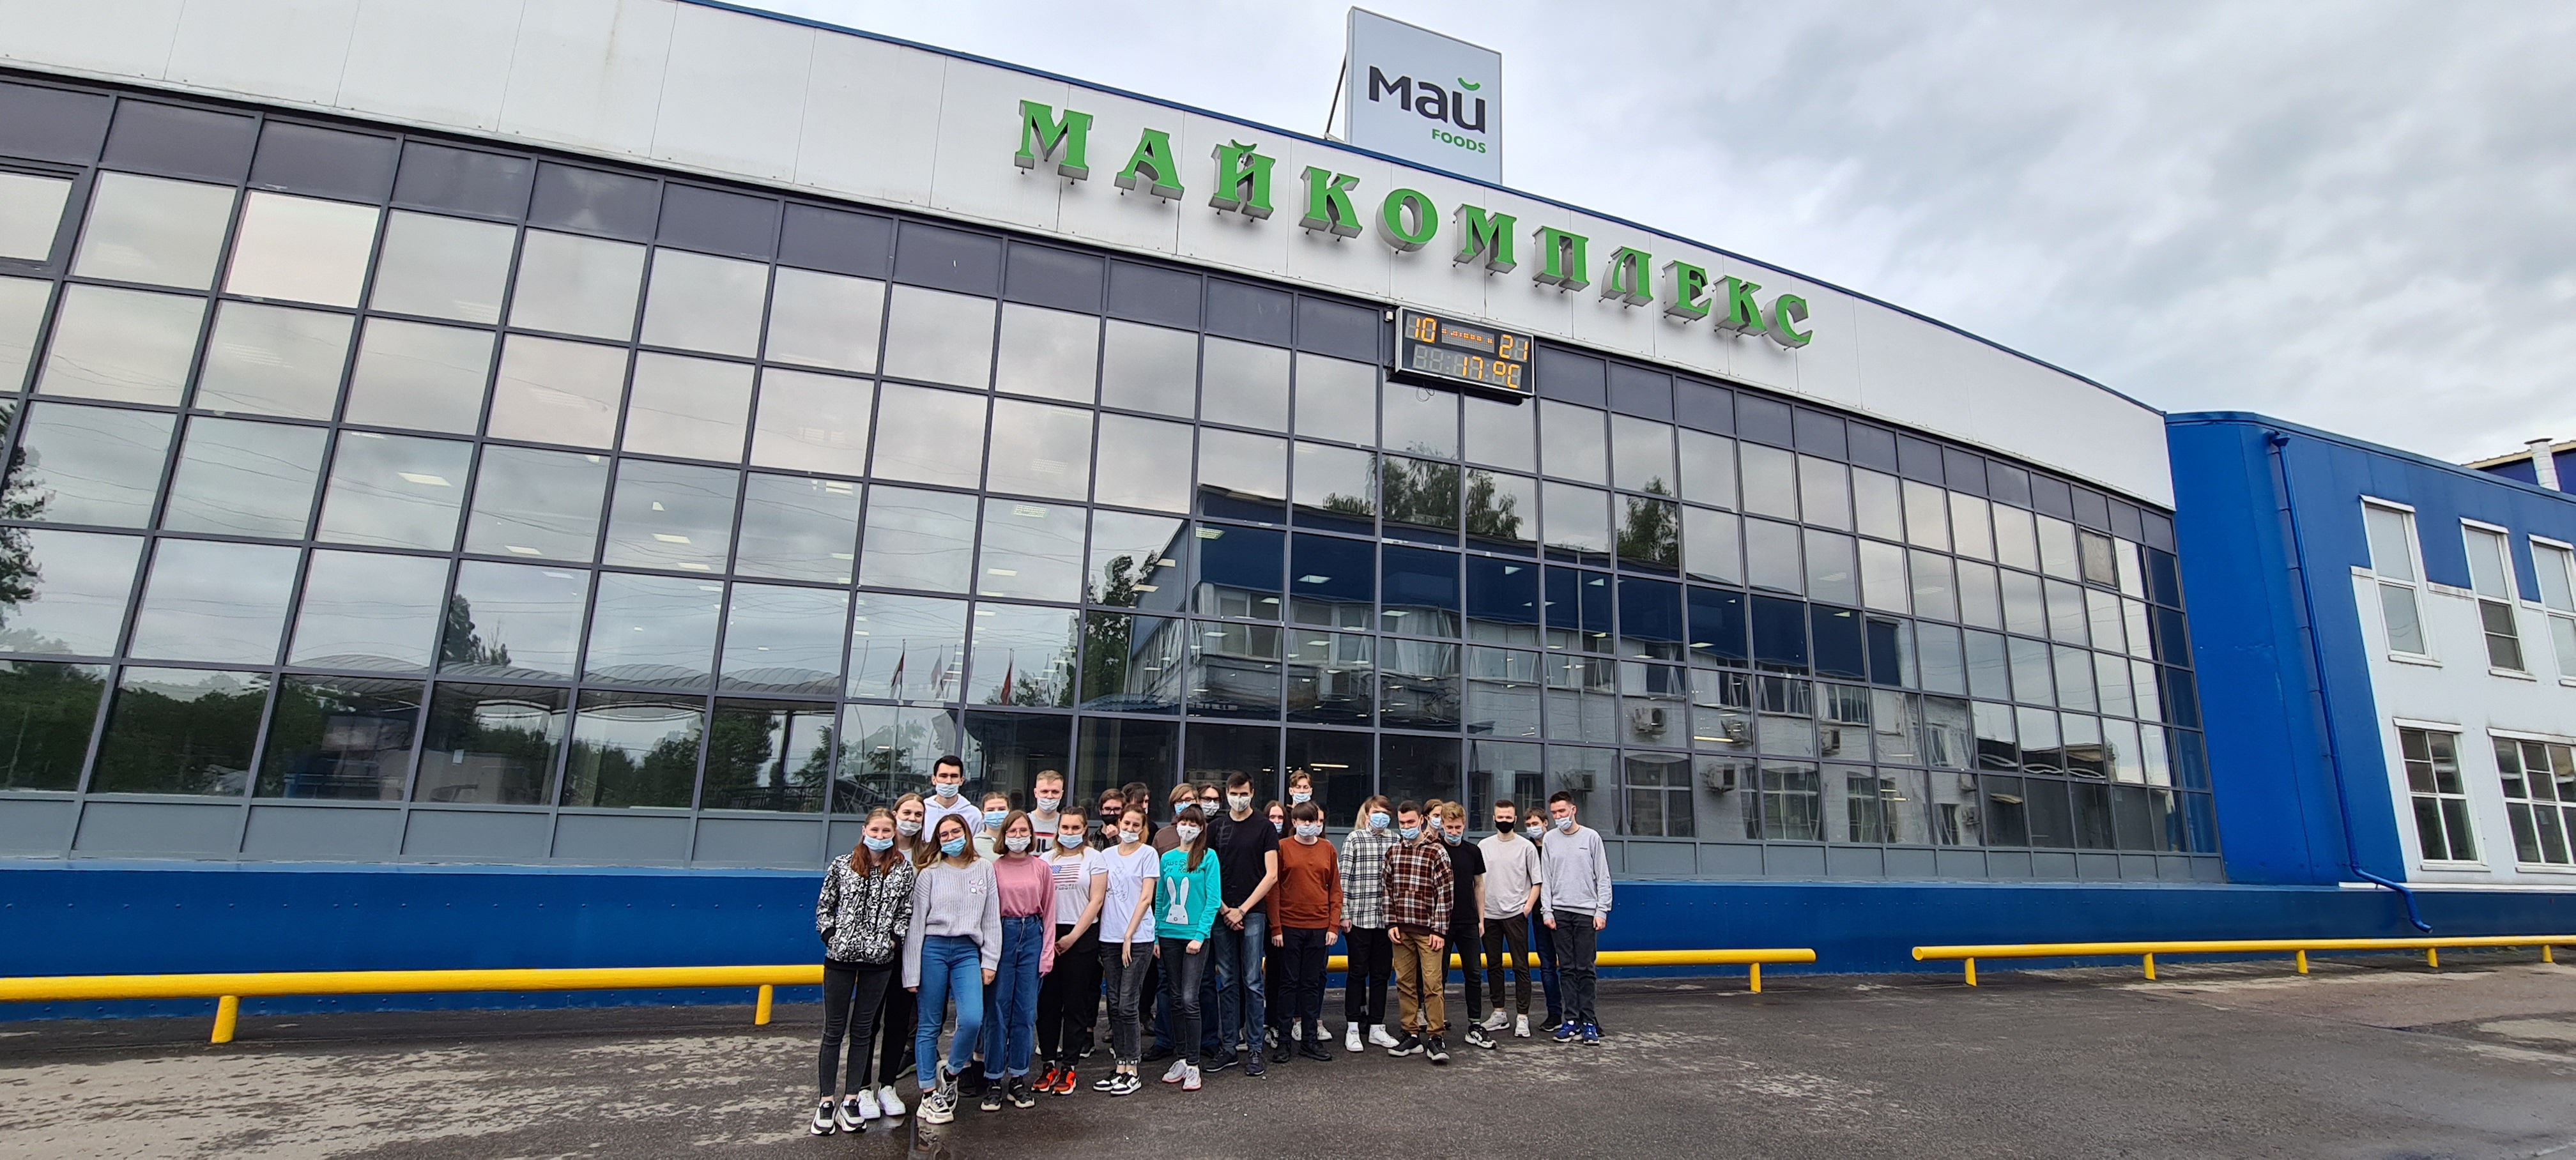 фото: Пресс-релиз: Компания МАЙ провела экскурсию по своей чаепроизводящей фабрике во Фрязино для 40 студентов Щелковского колледжа 